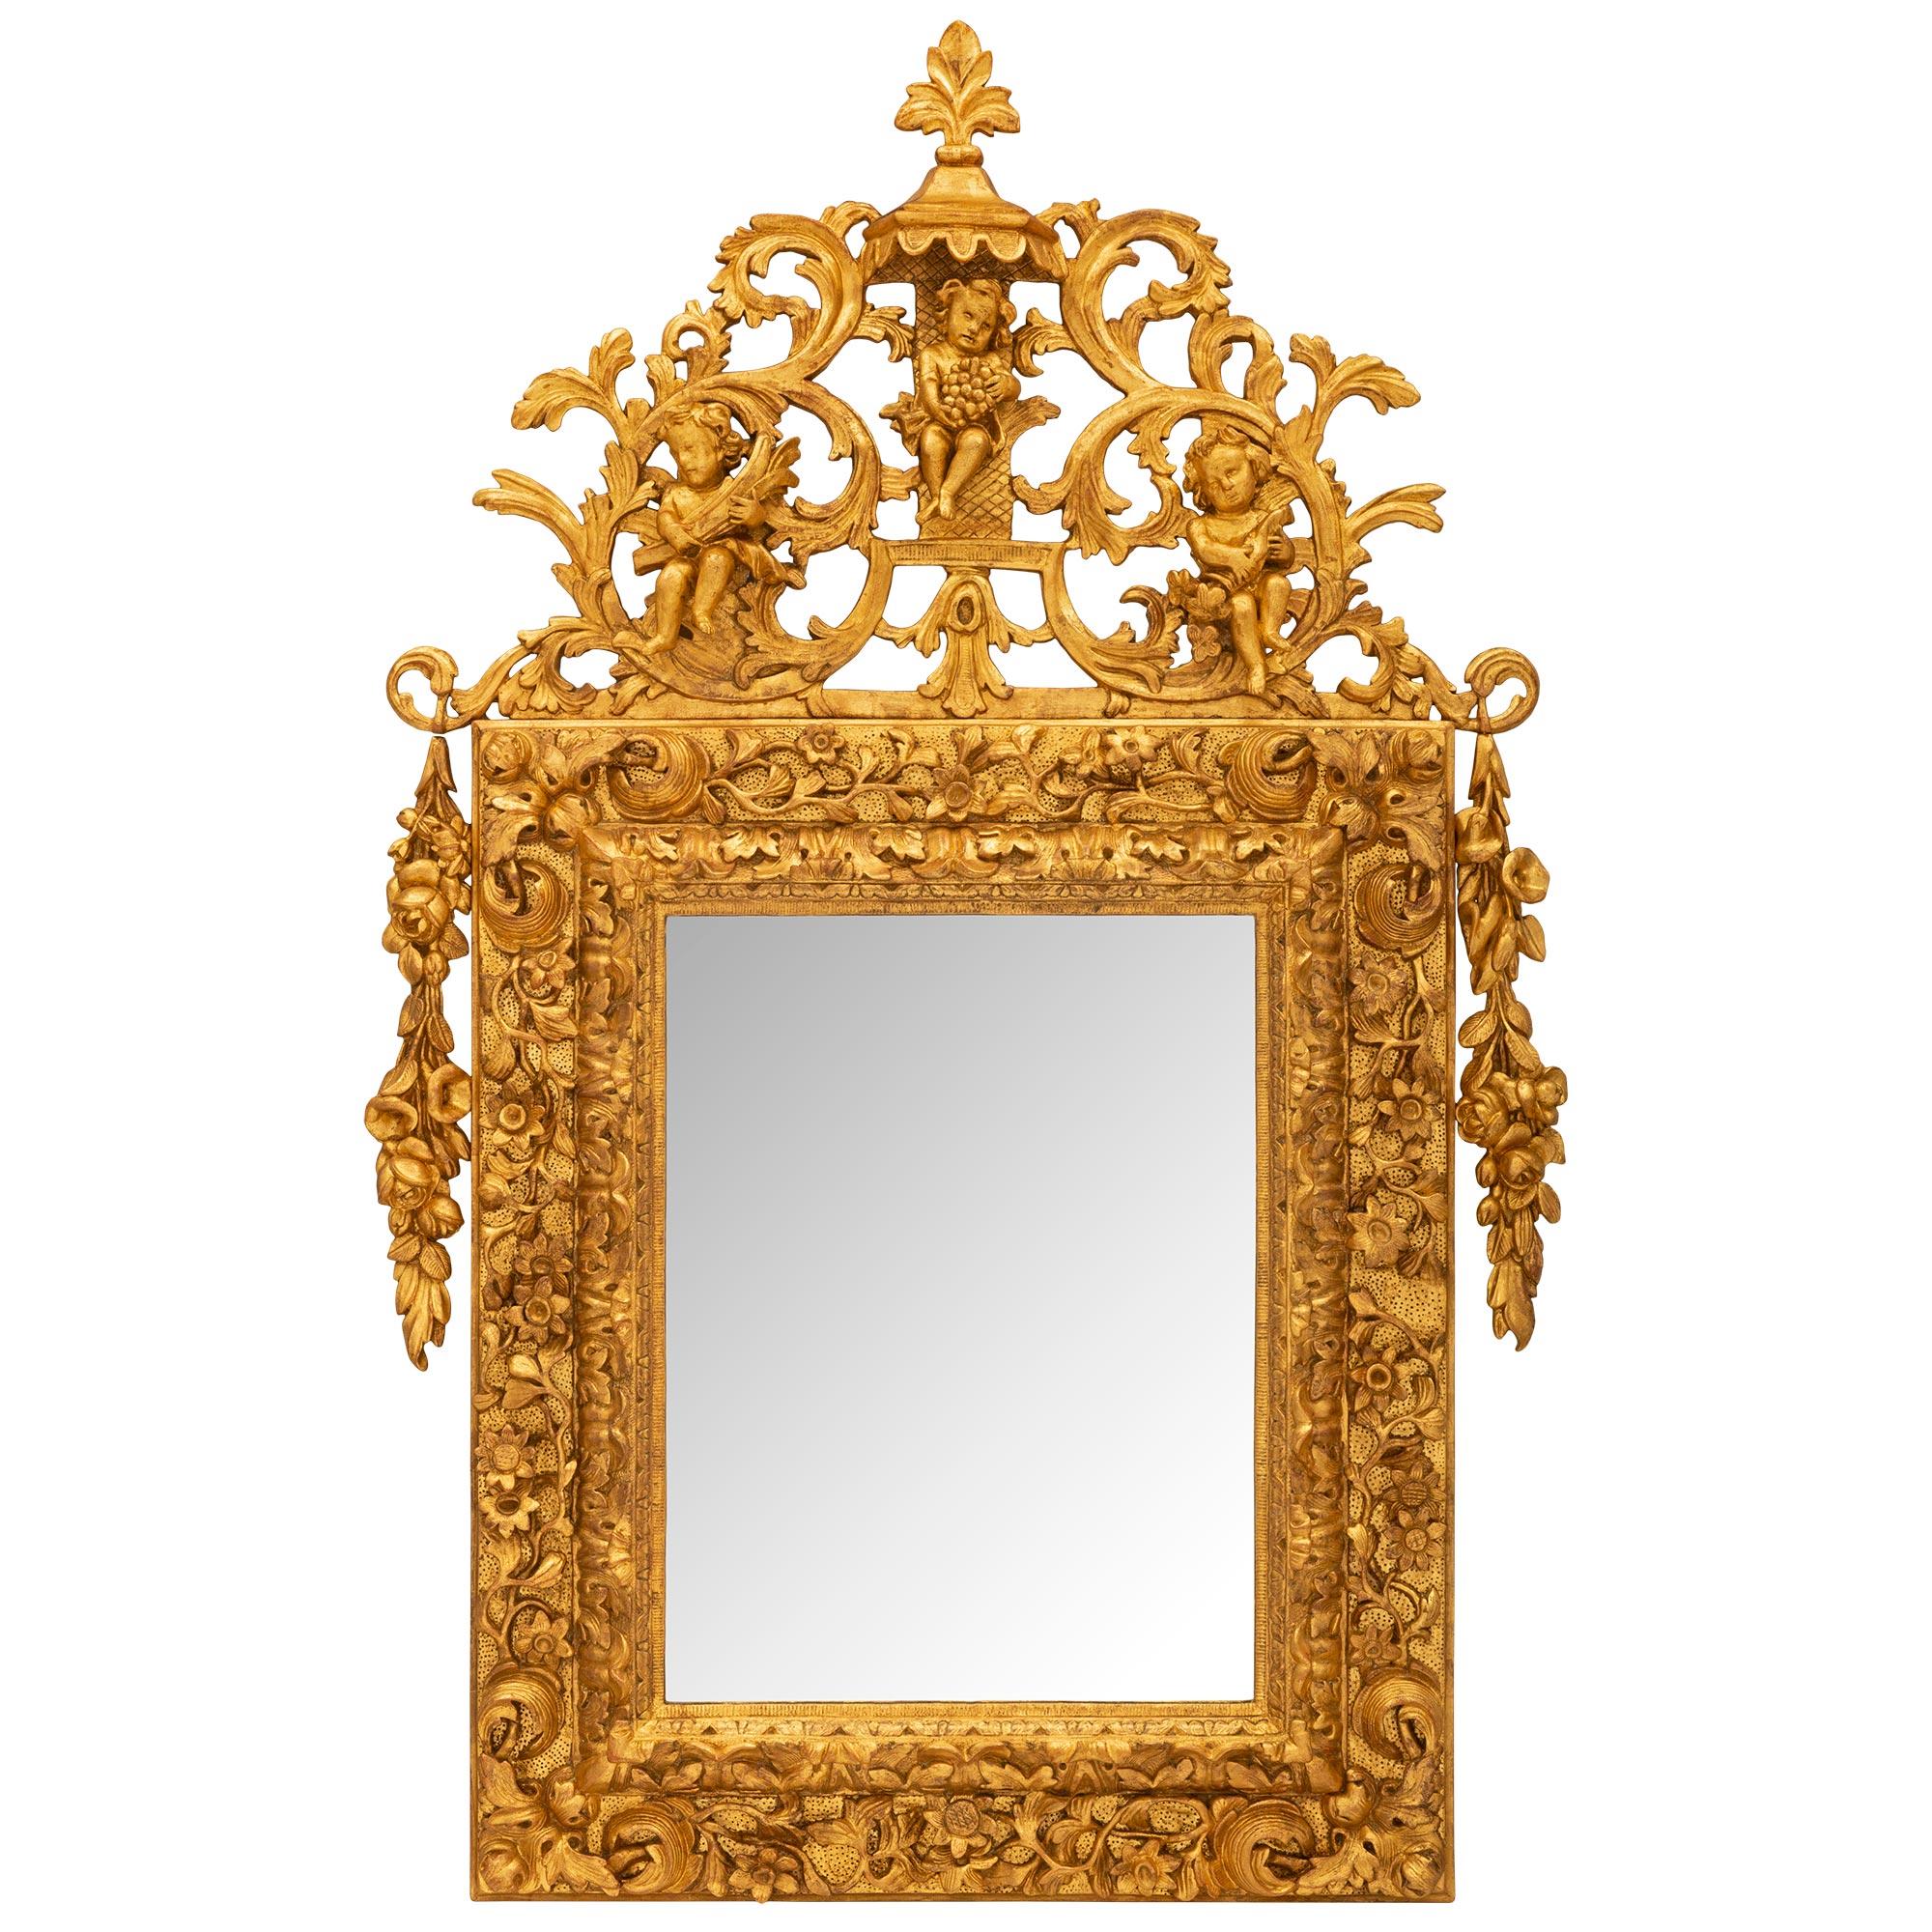 Miroir italien en bois doré d'époque baroque du XVIIIe siècle